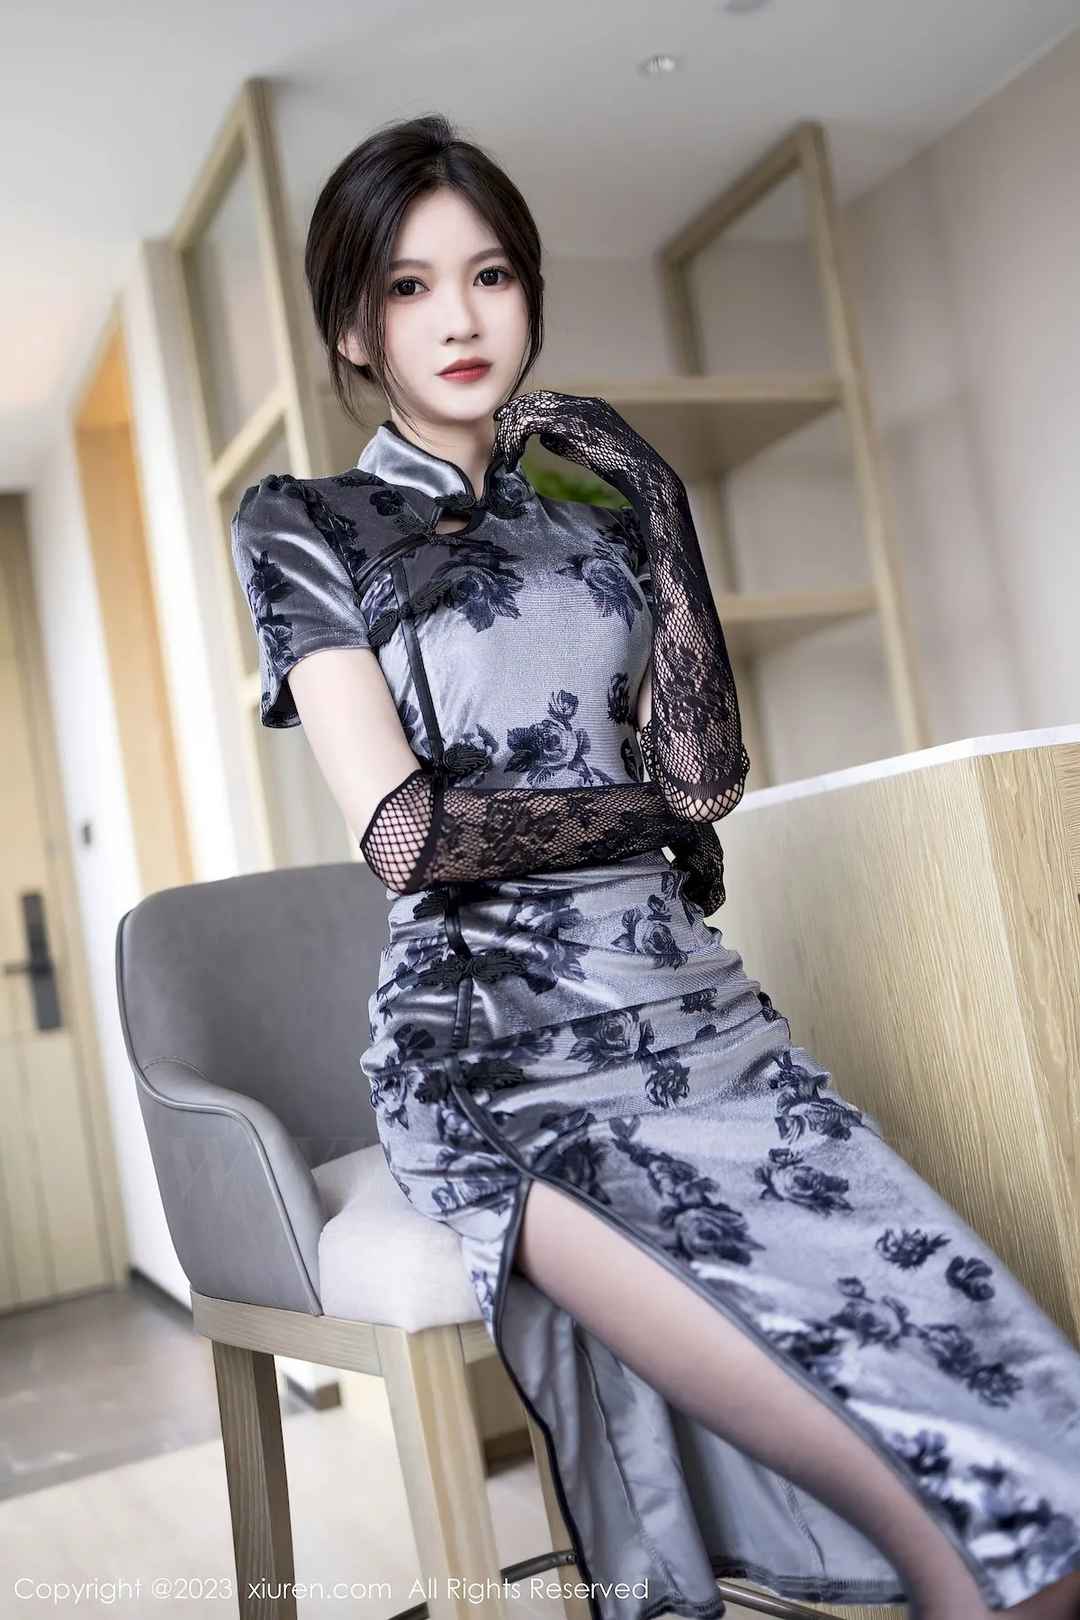 秀人网美女模特程程程-薄纱旗袍服饰搭配黑丝性感写真